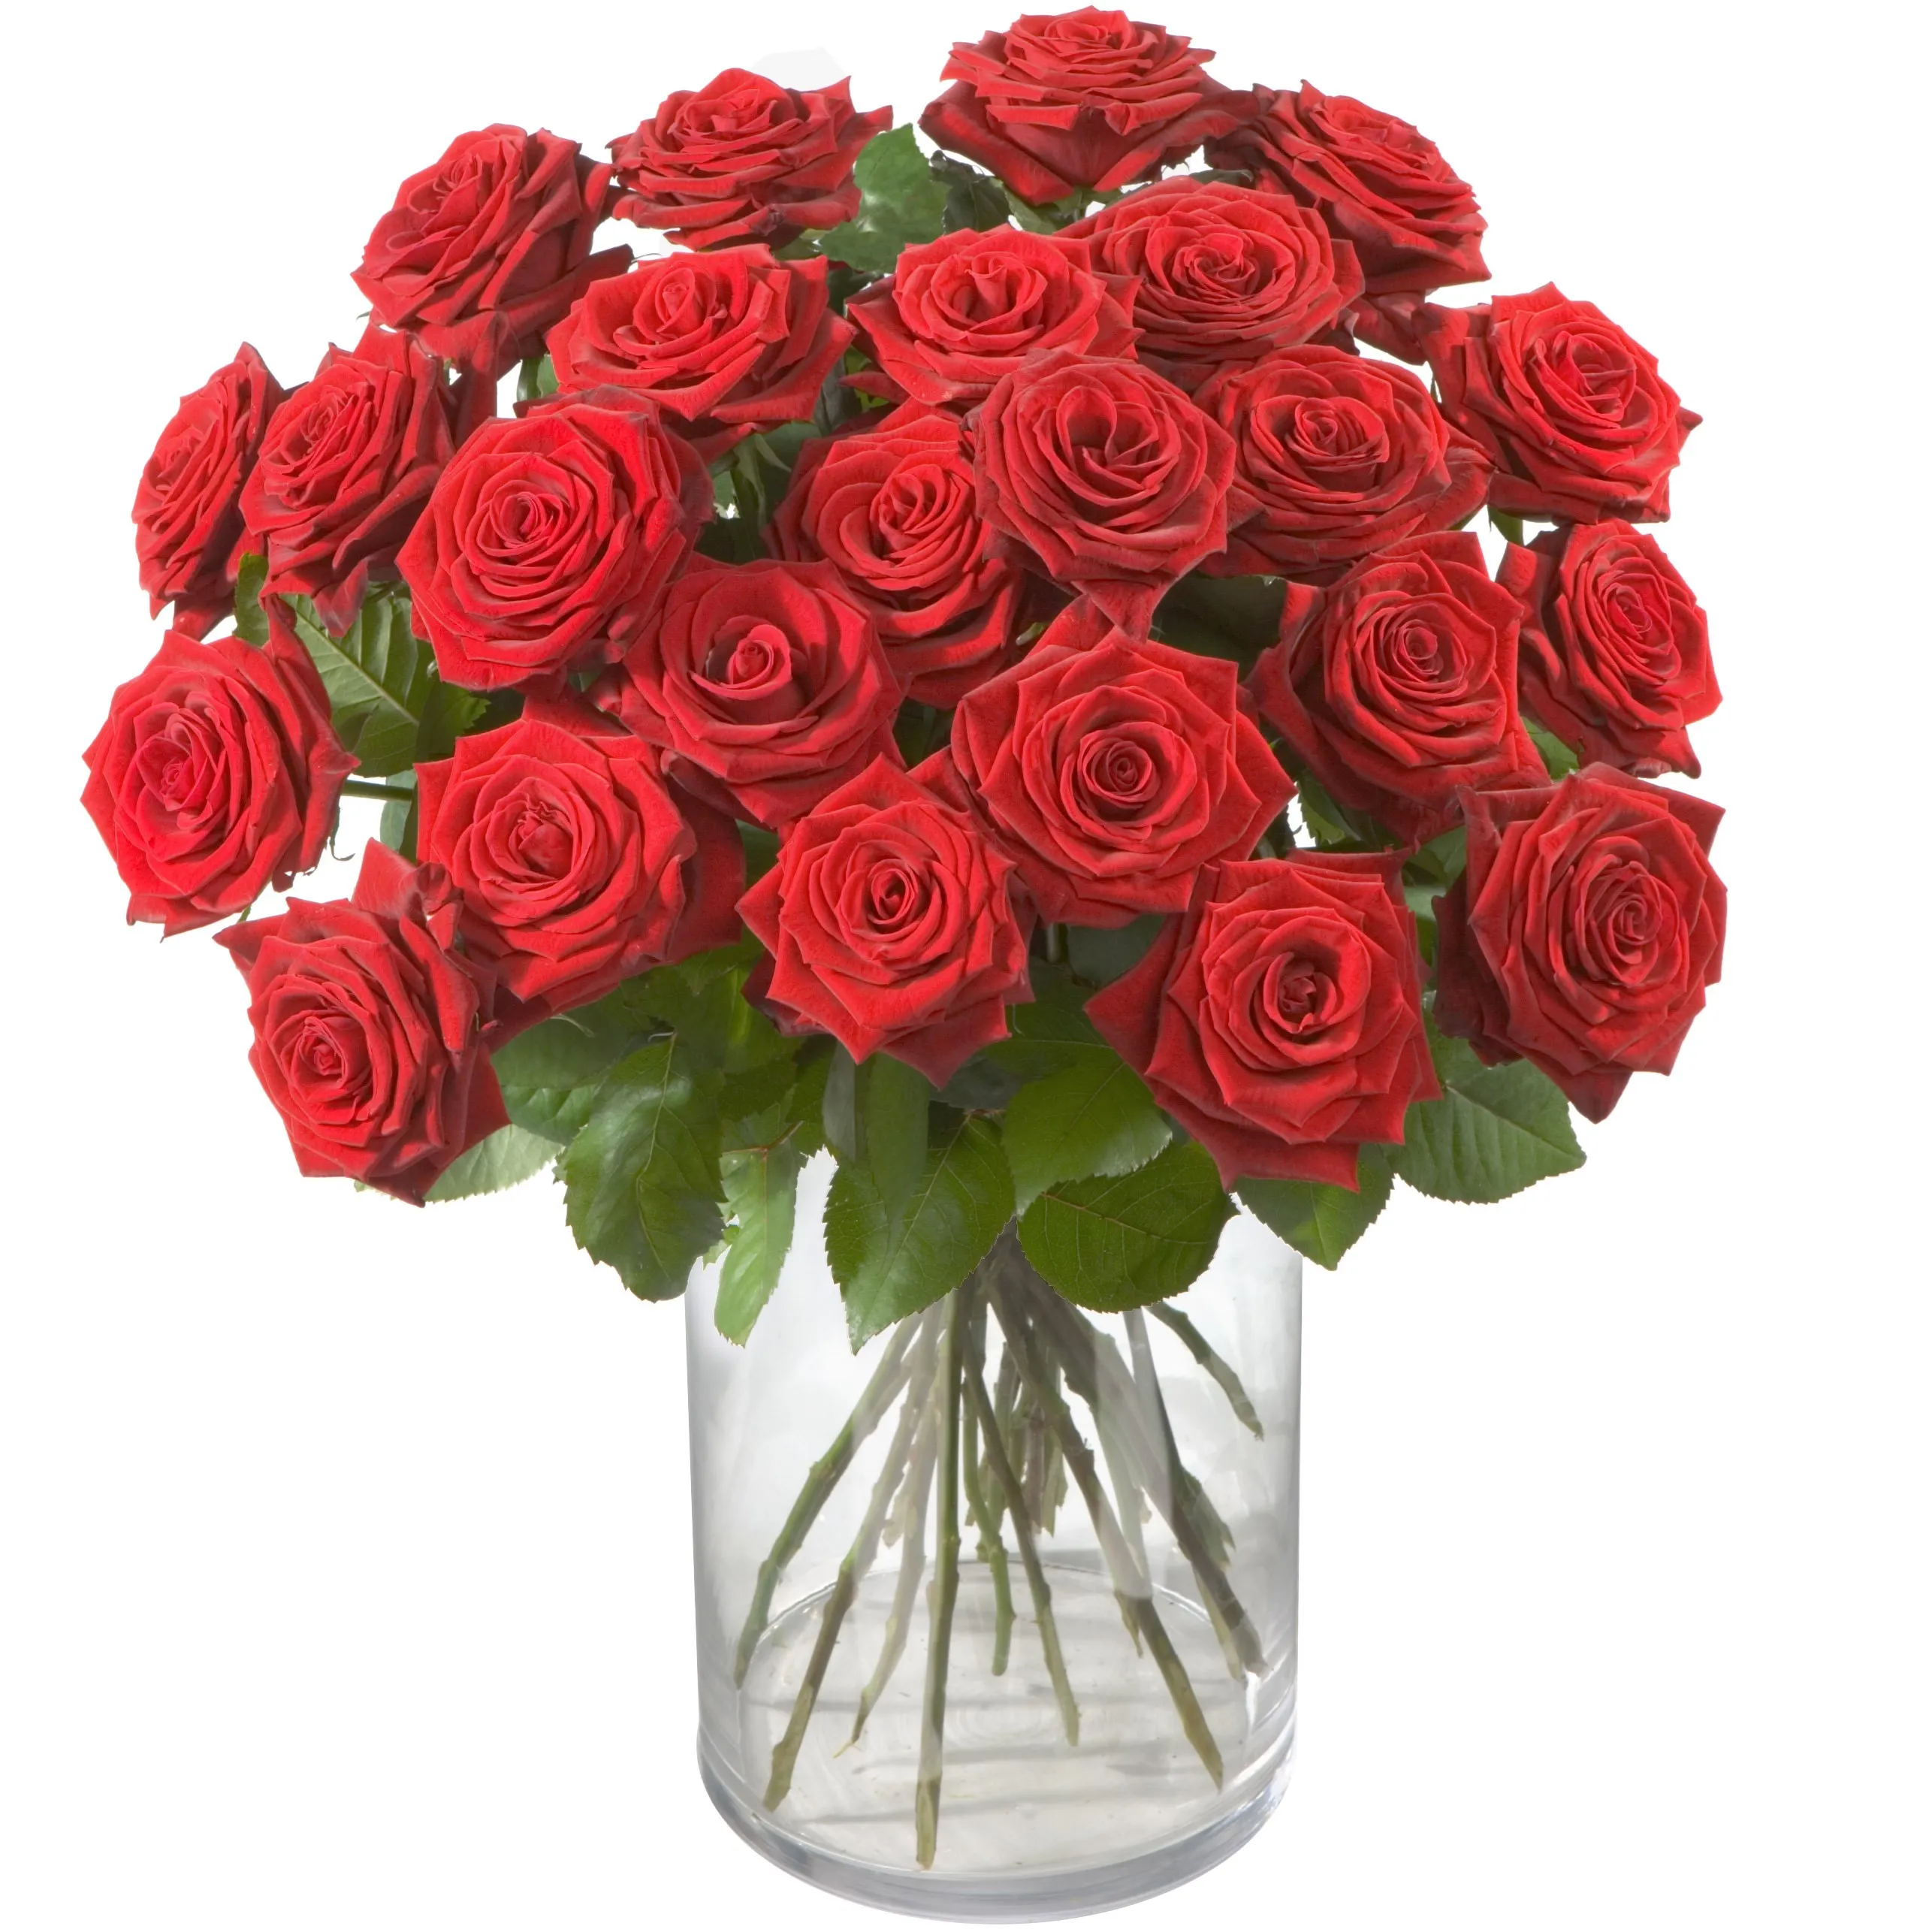 Red Roses Classics - Georgia